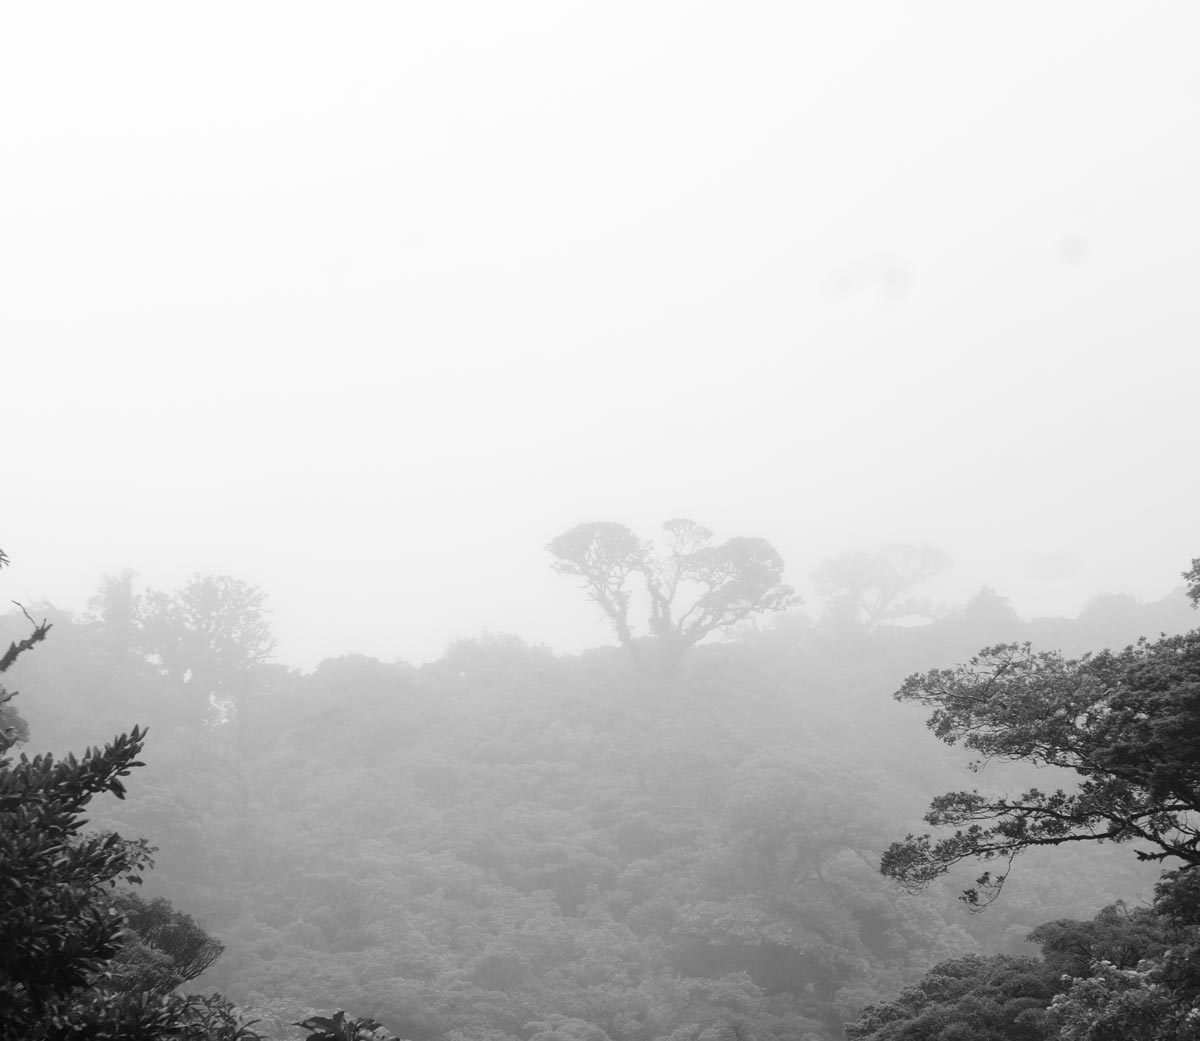 Dreamscape on Cerro Amigos in the Monteverde region